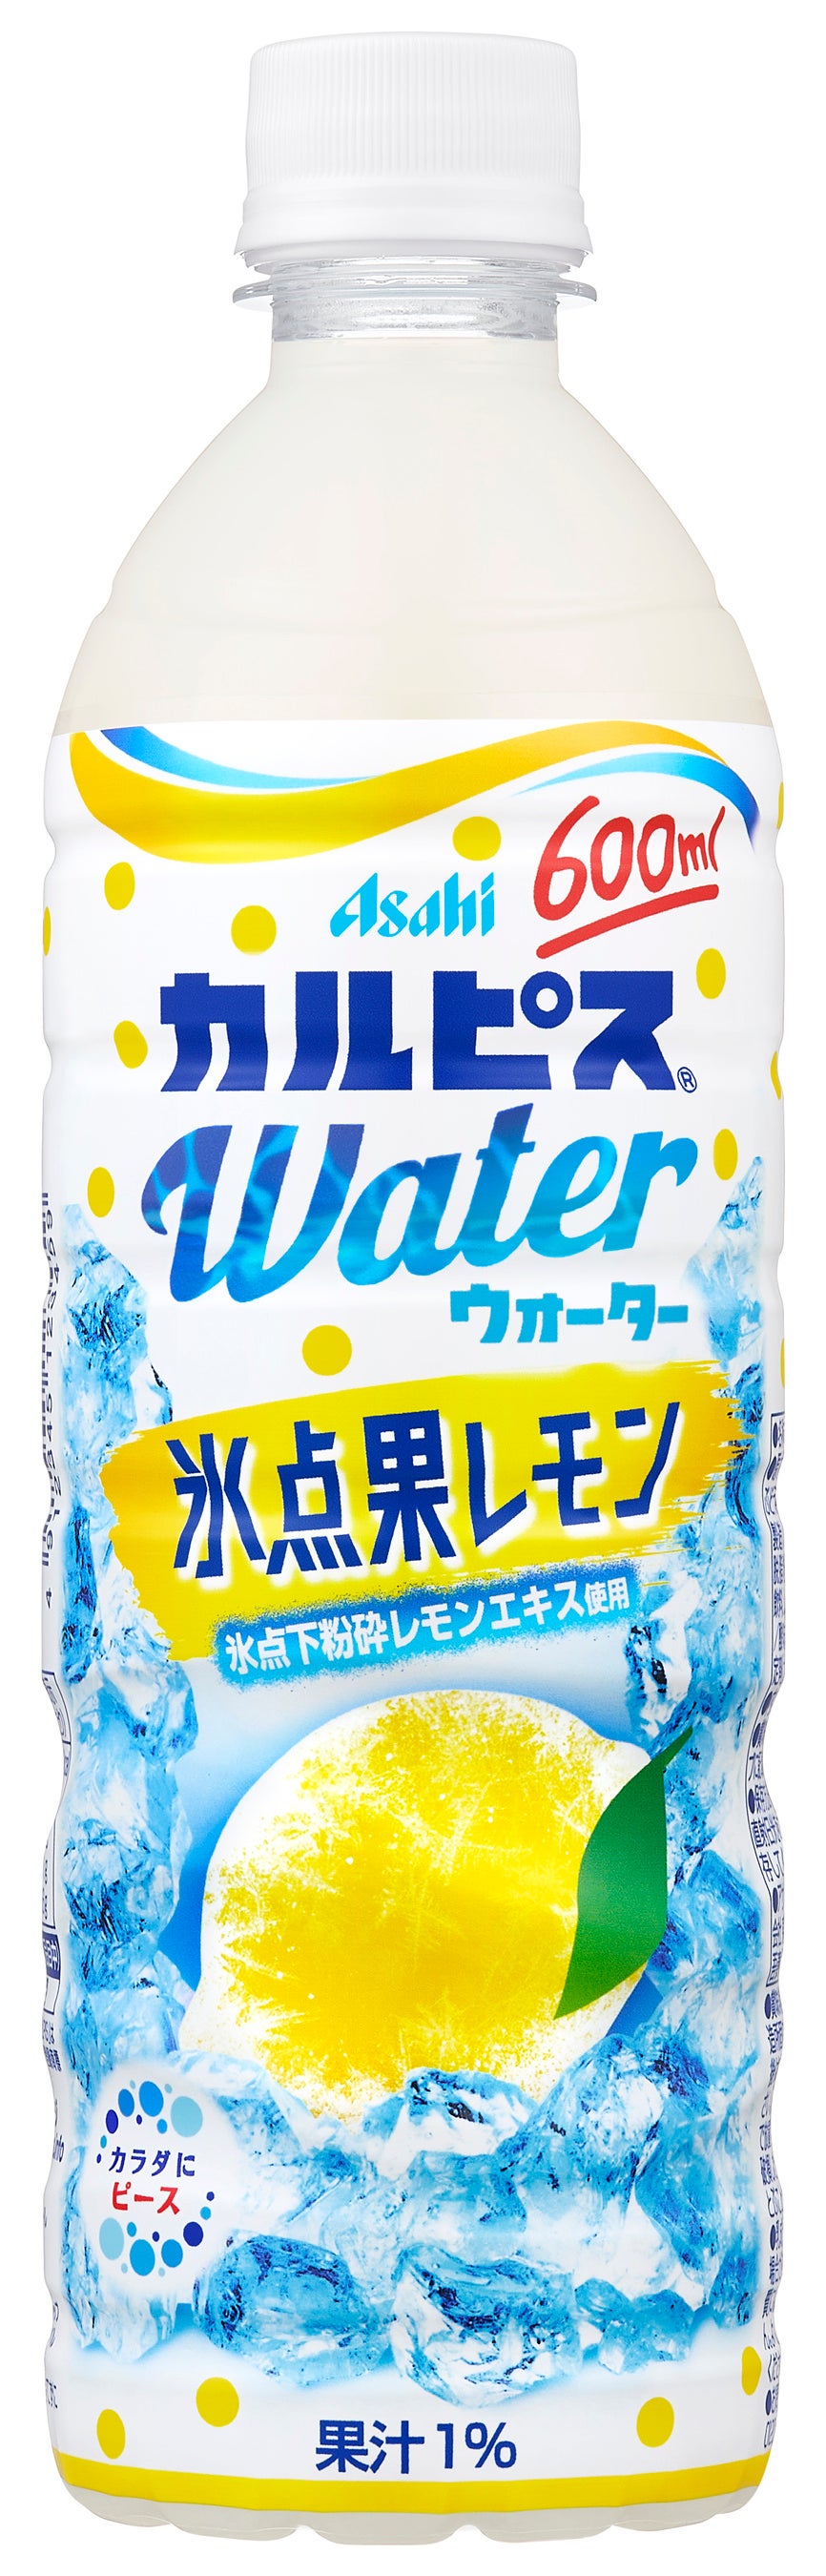 『カルピスウォーター 氷点果レモン』7月2日発売